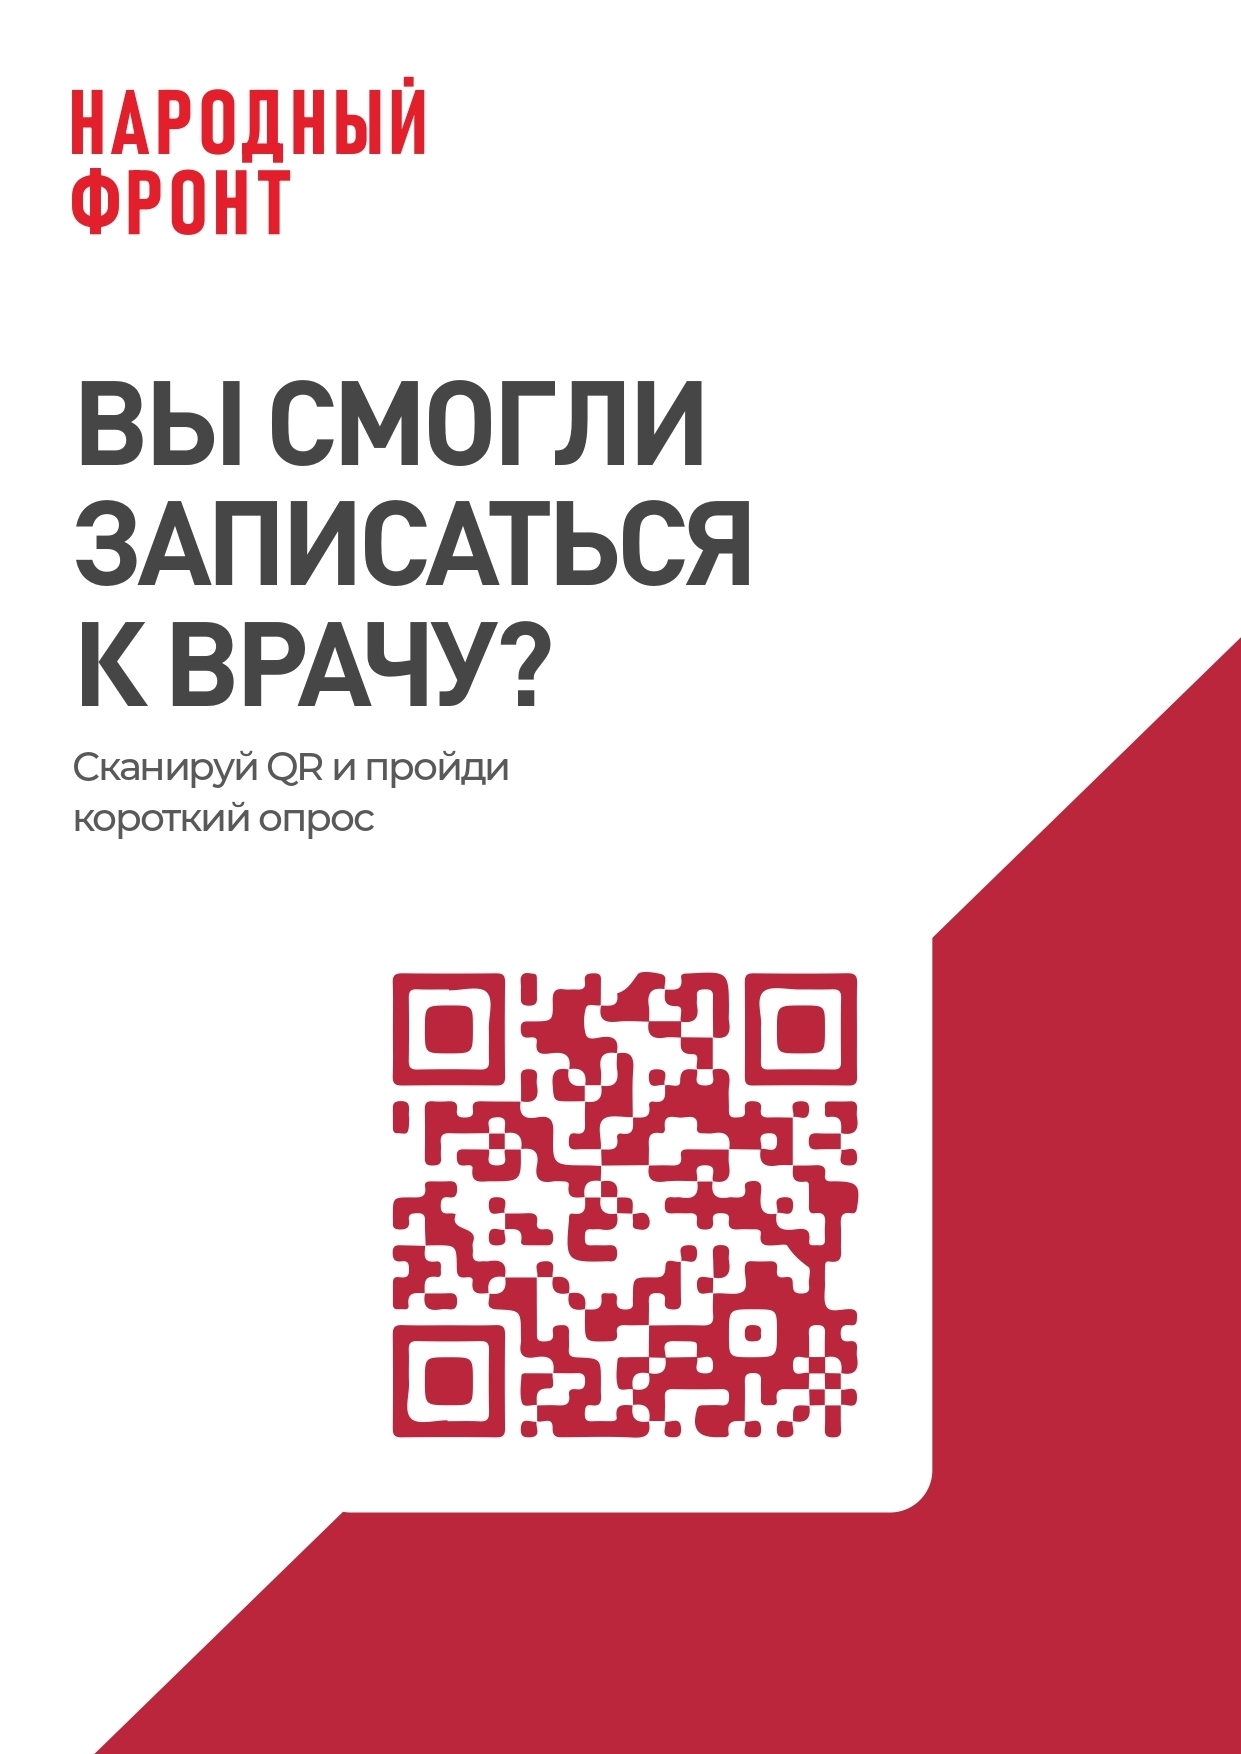 Качество предоставления услуги Онлайн запись на прием к врачу на Едином портале государственных услуг Российской Федерации